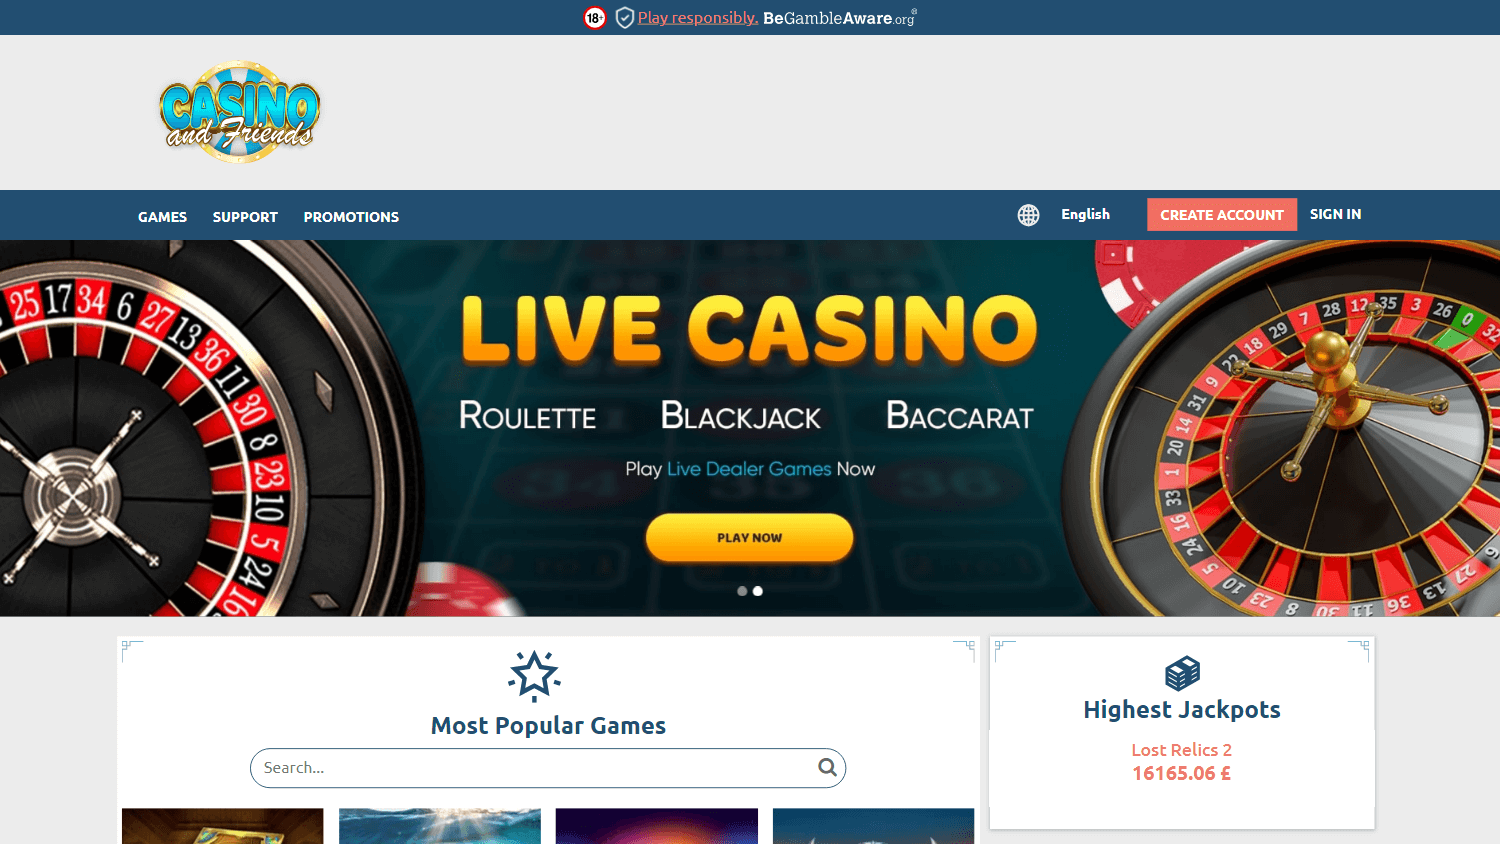 casinoandfriends_uk_homepage_desktop